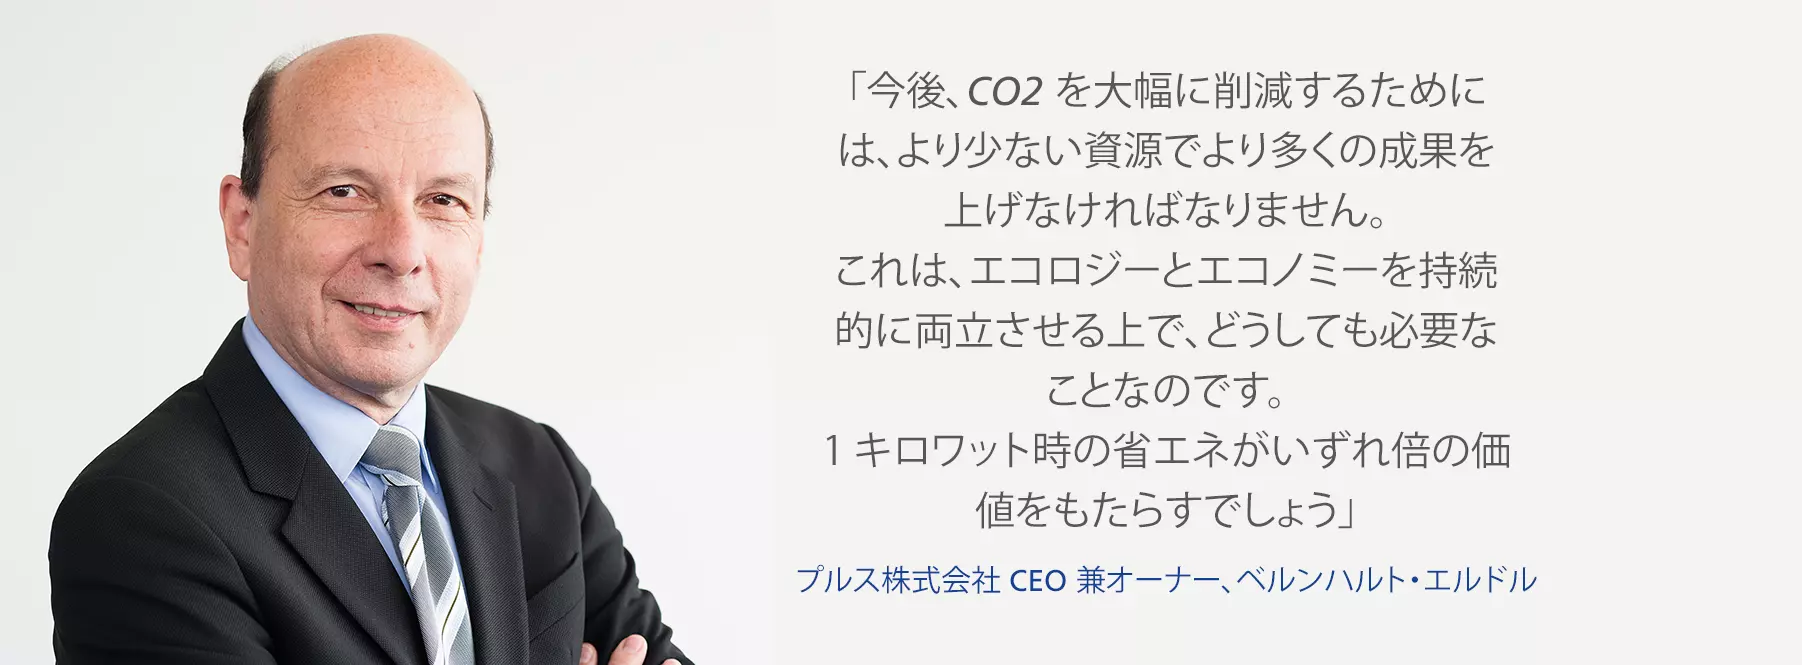 CO2 削減について語るプルス株式会社の CEO 兼オーナー、ベルンハルト・エルドル。